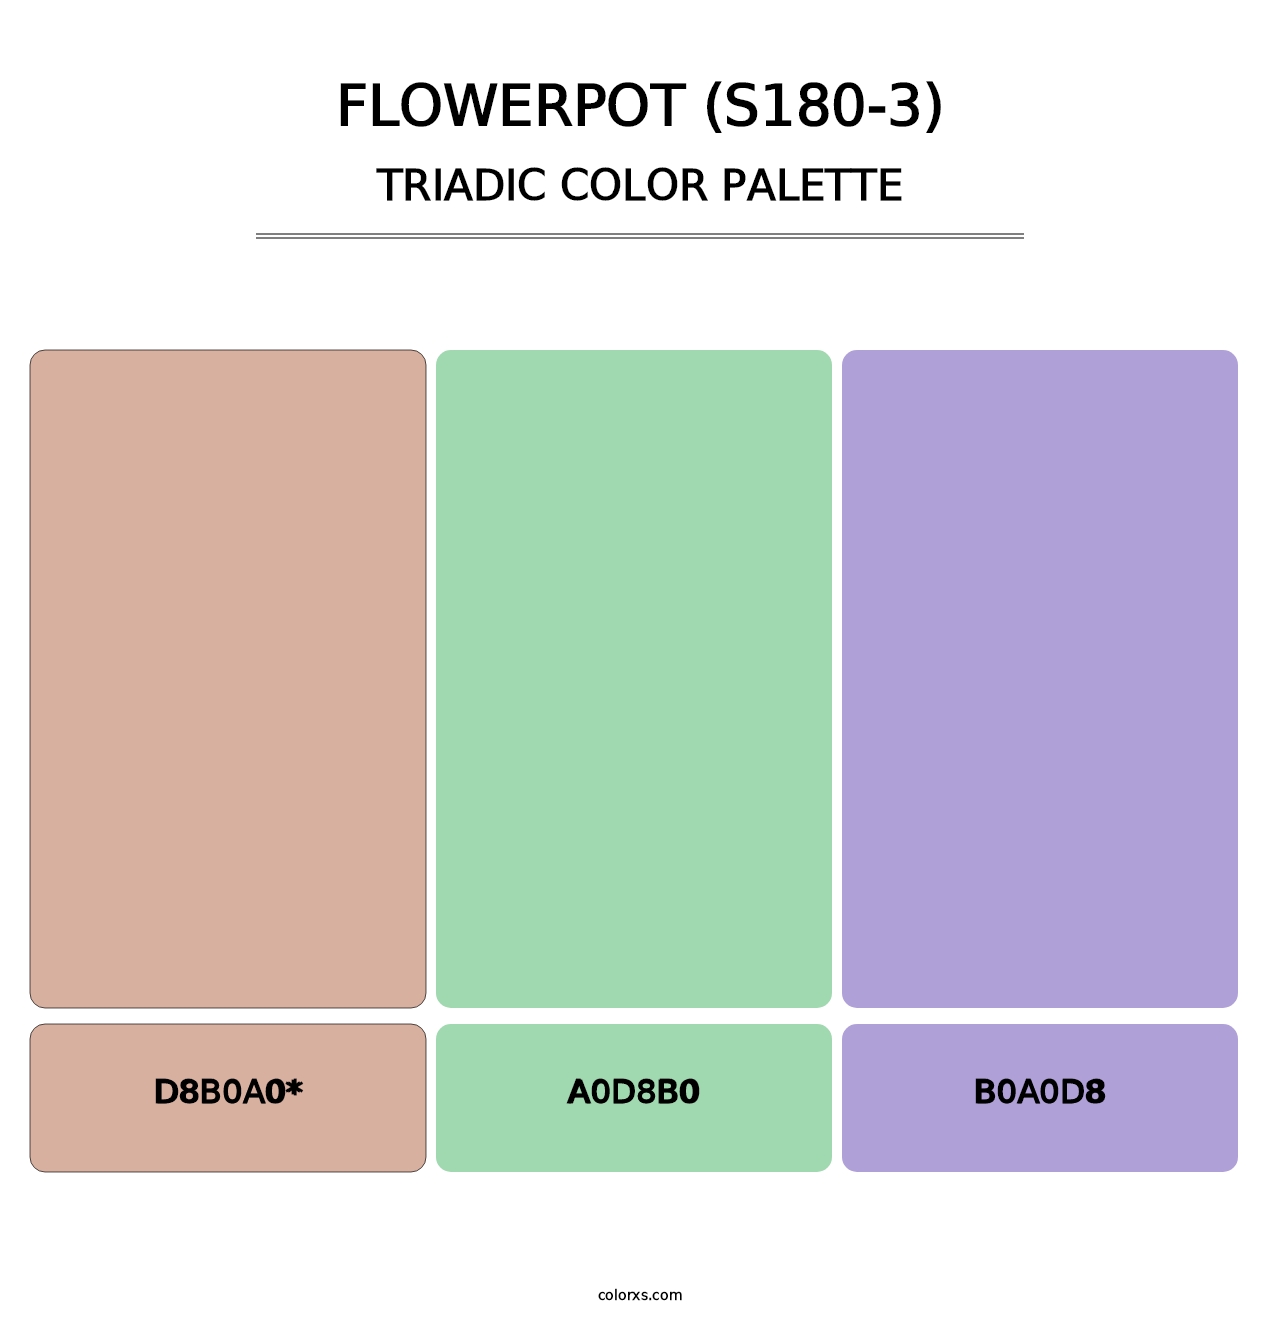 Flowerpot (S180-3) - Triadic Color Palette